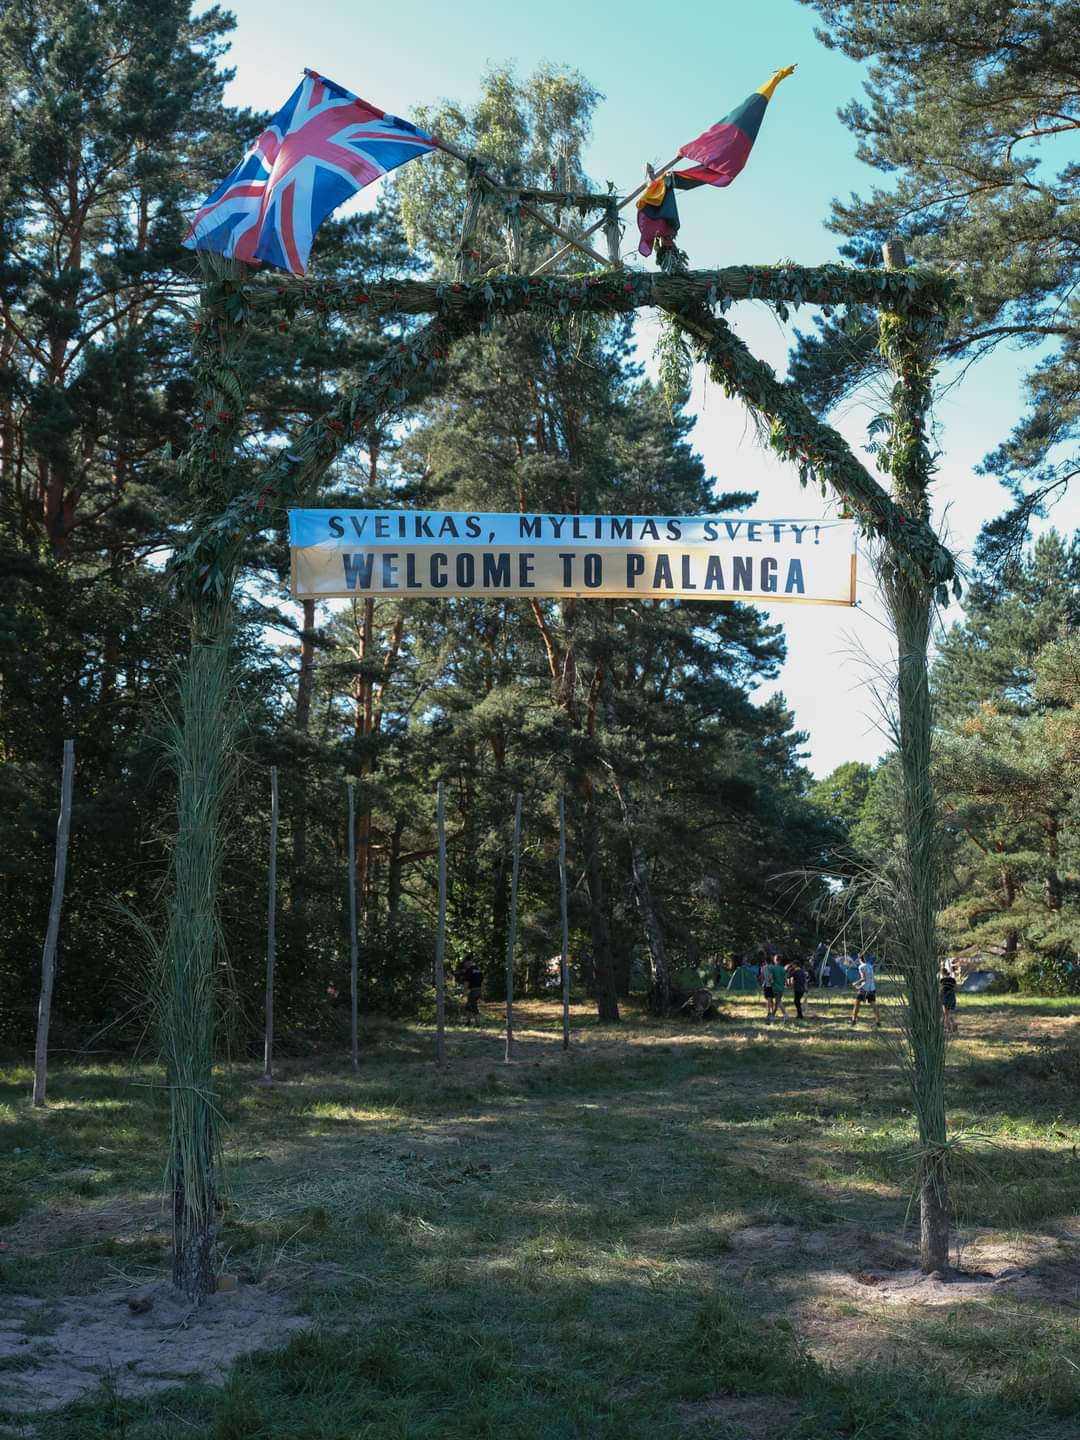 Tautinės stovyklos 1933 m. vartų rekonstrukcija | Vilnius Lifestyle nuotr.